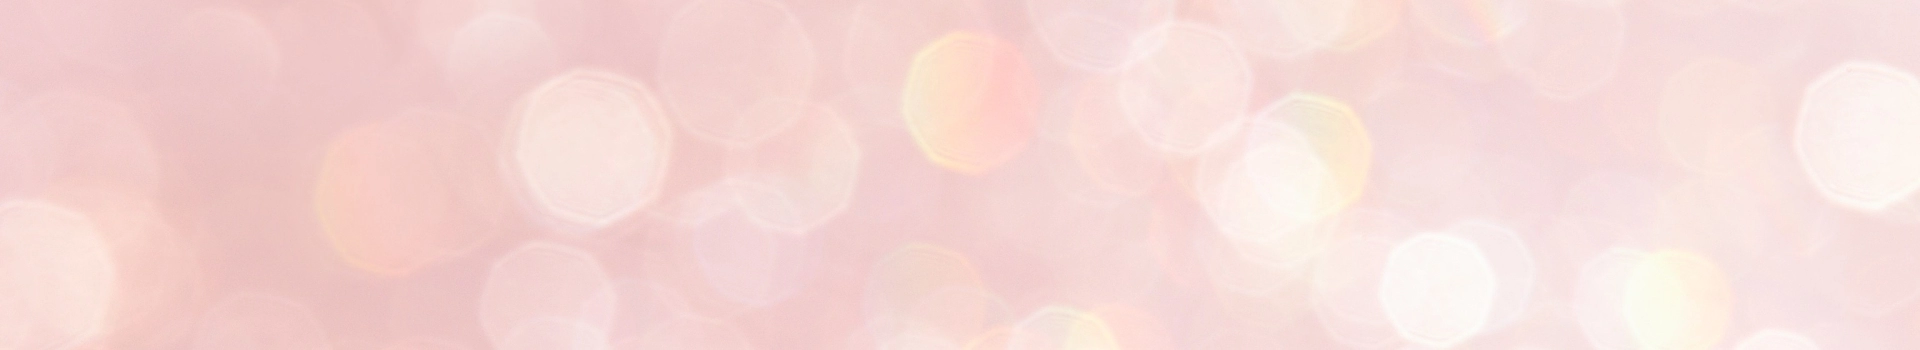 banner - różowe tło z refleksami